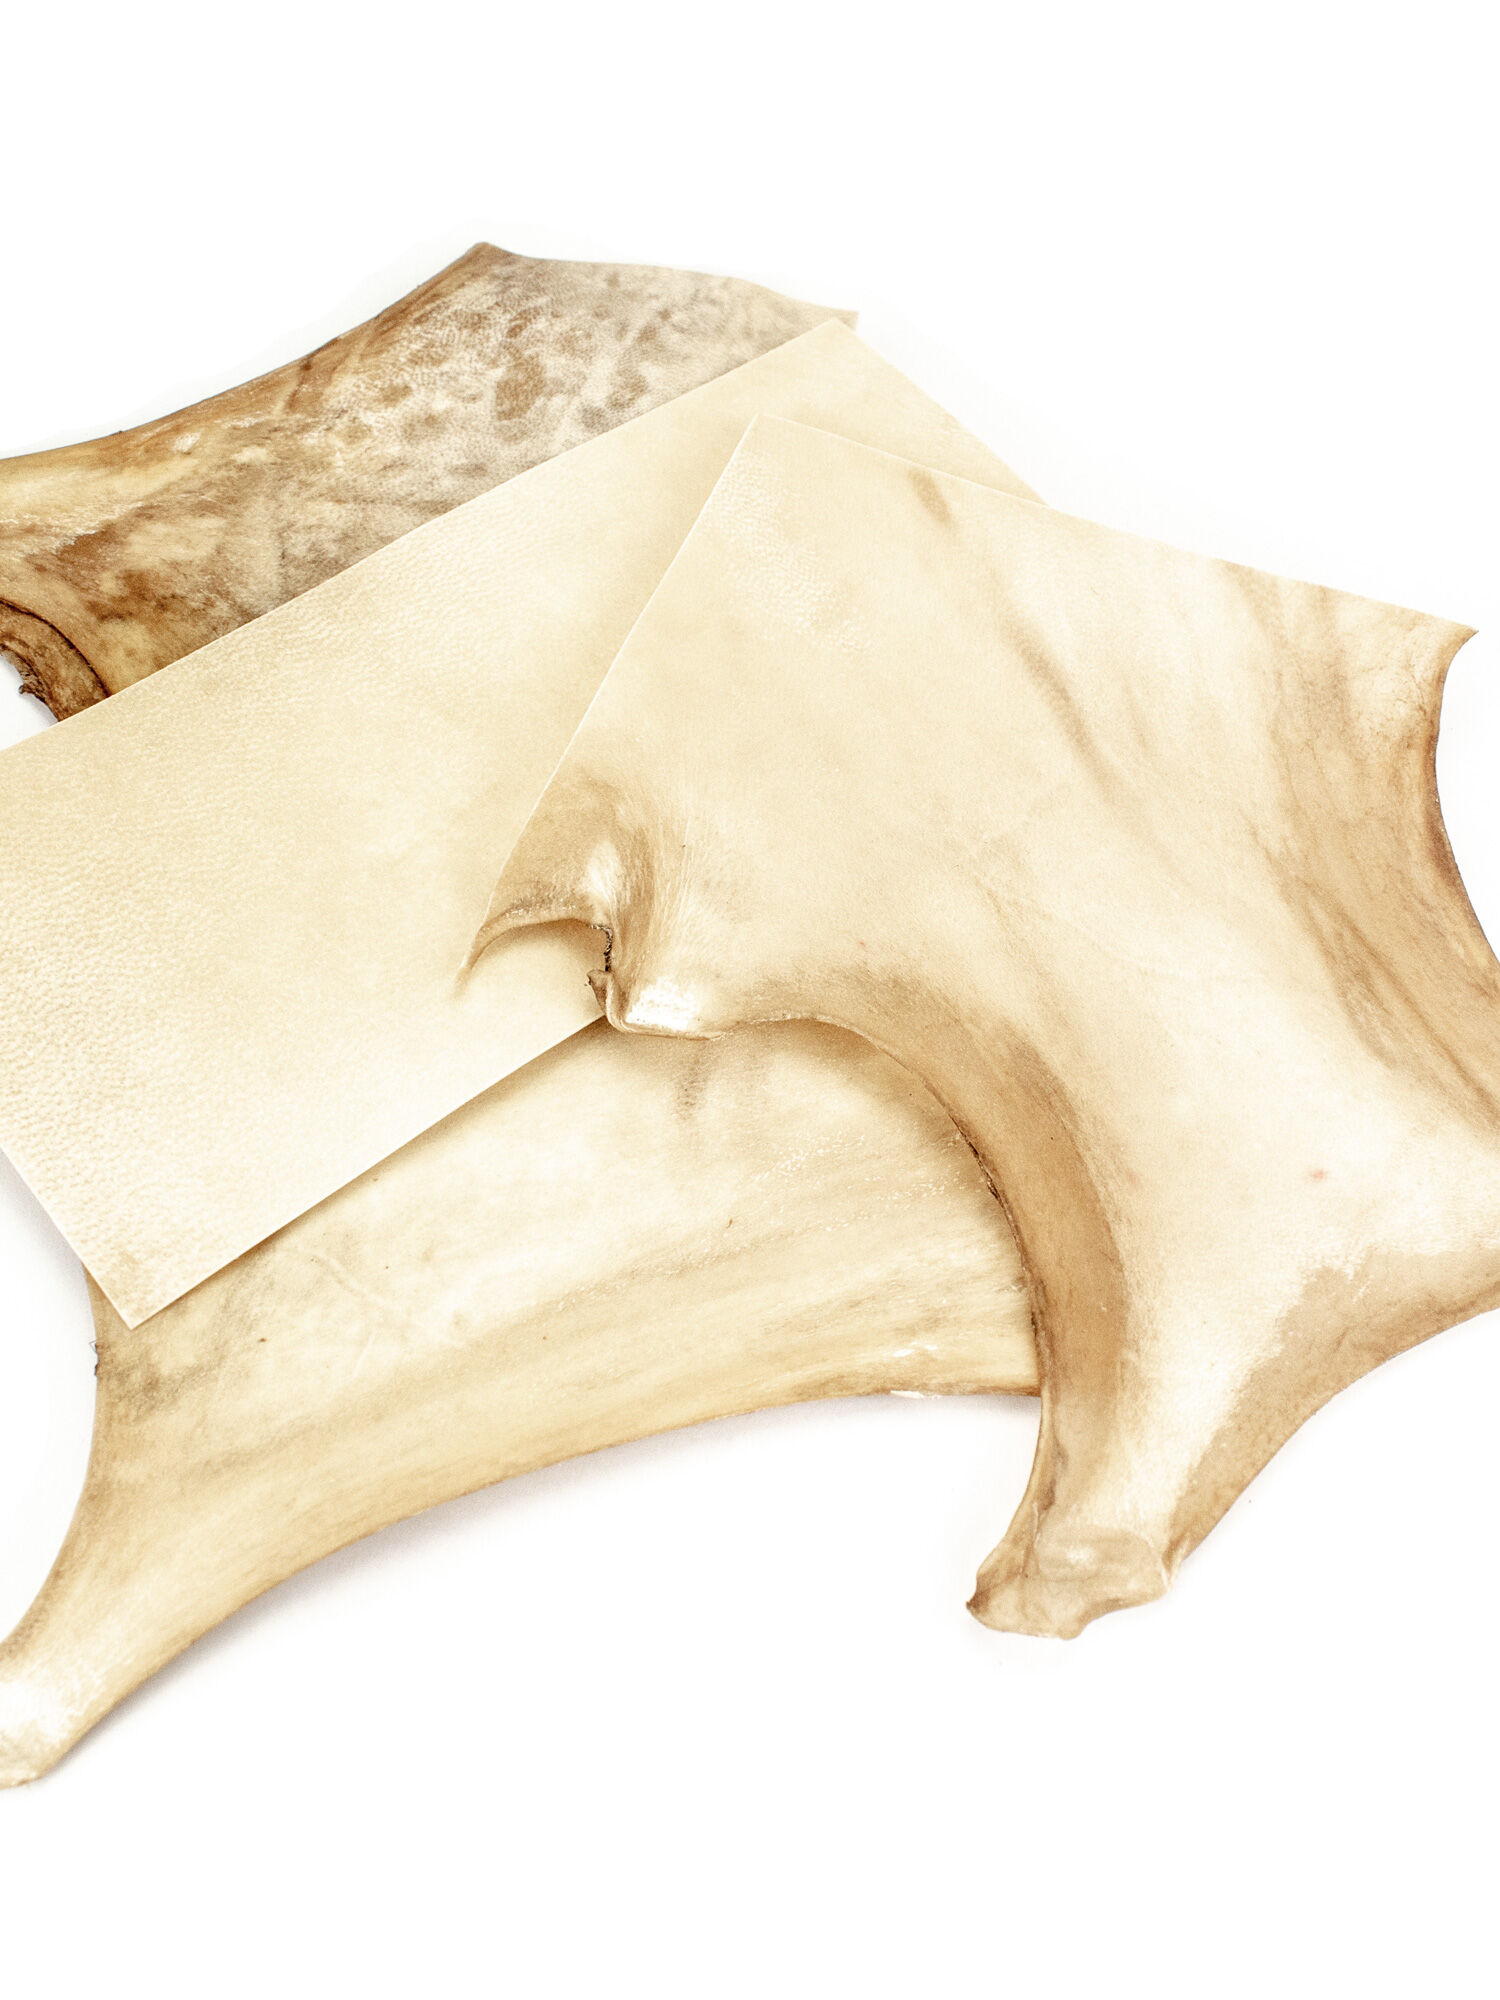 Parchment – genuine complete animal hides - The Romans